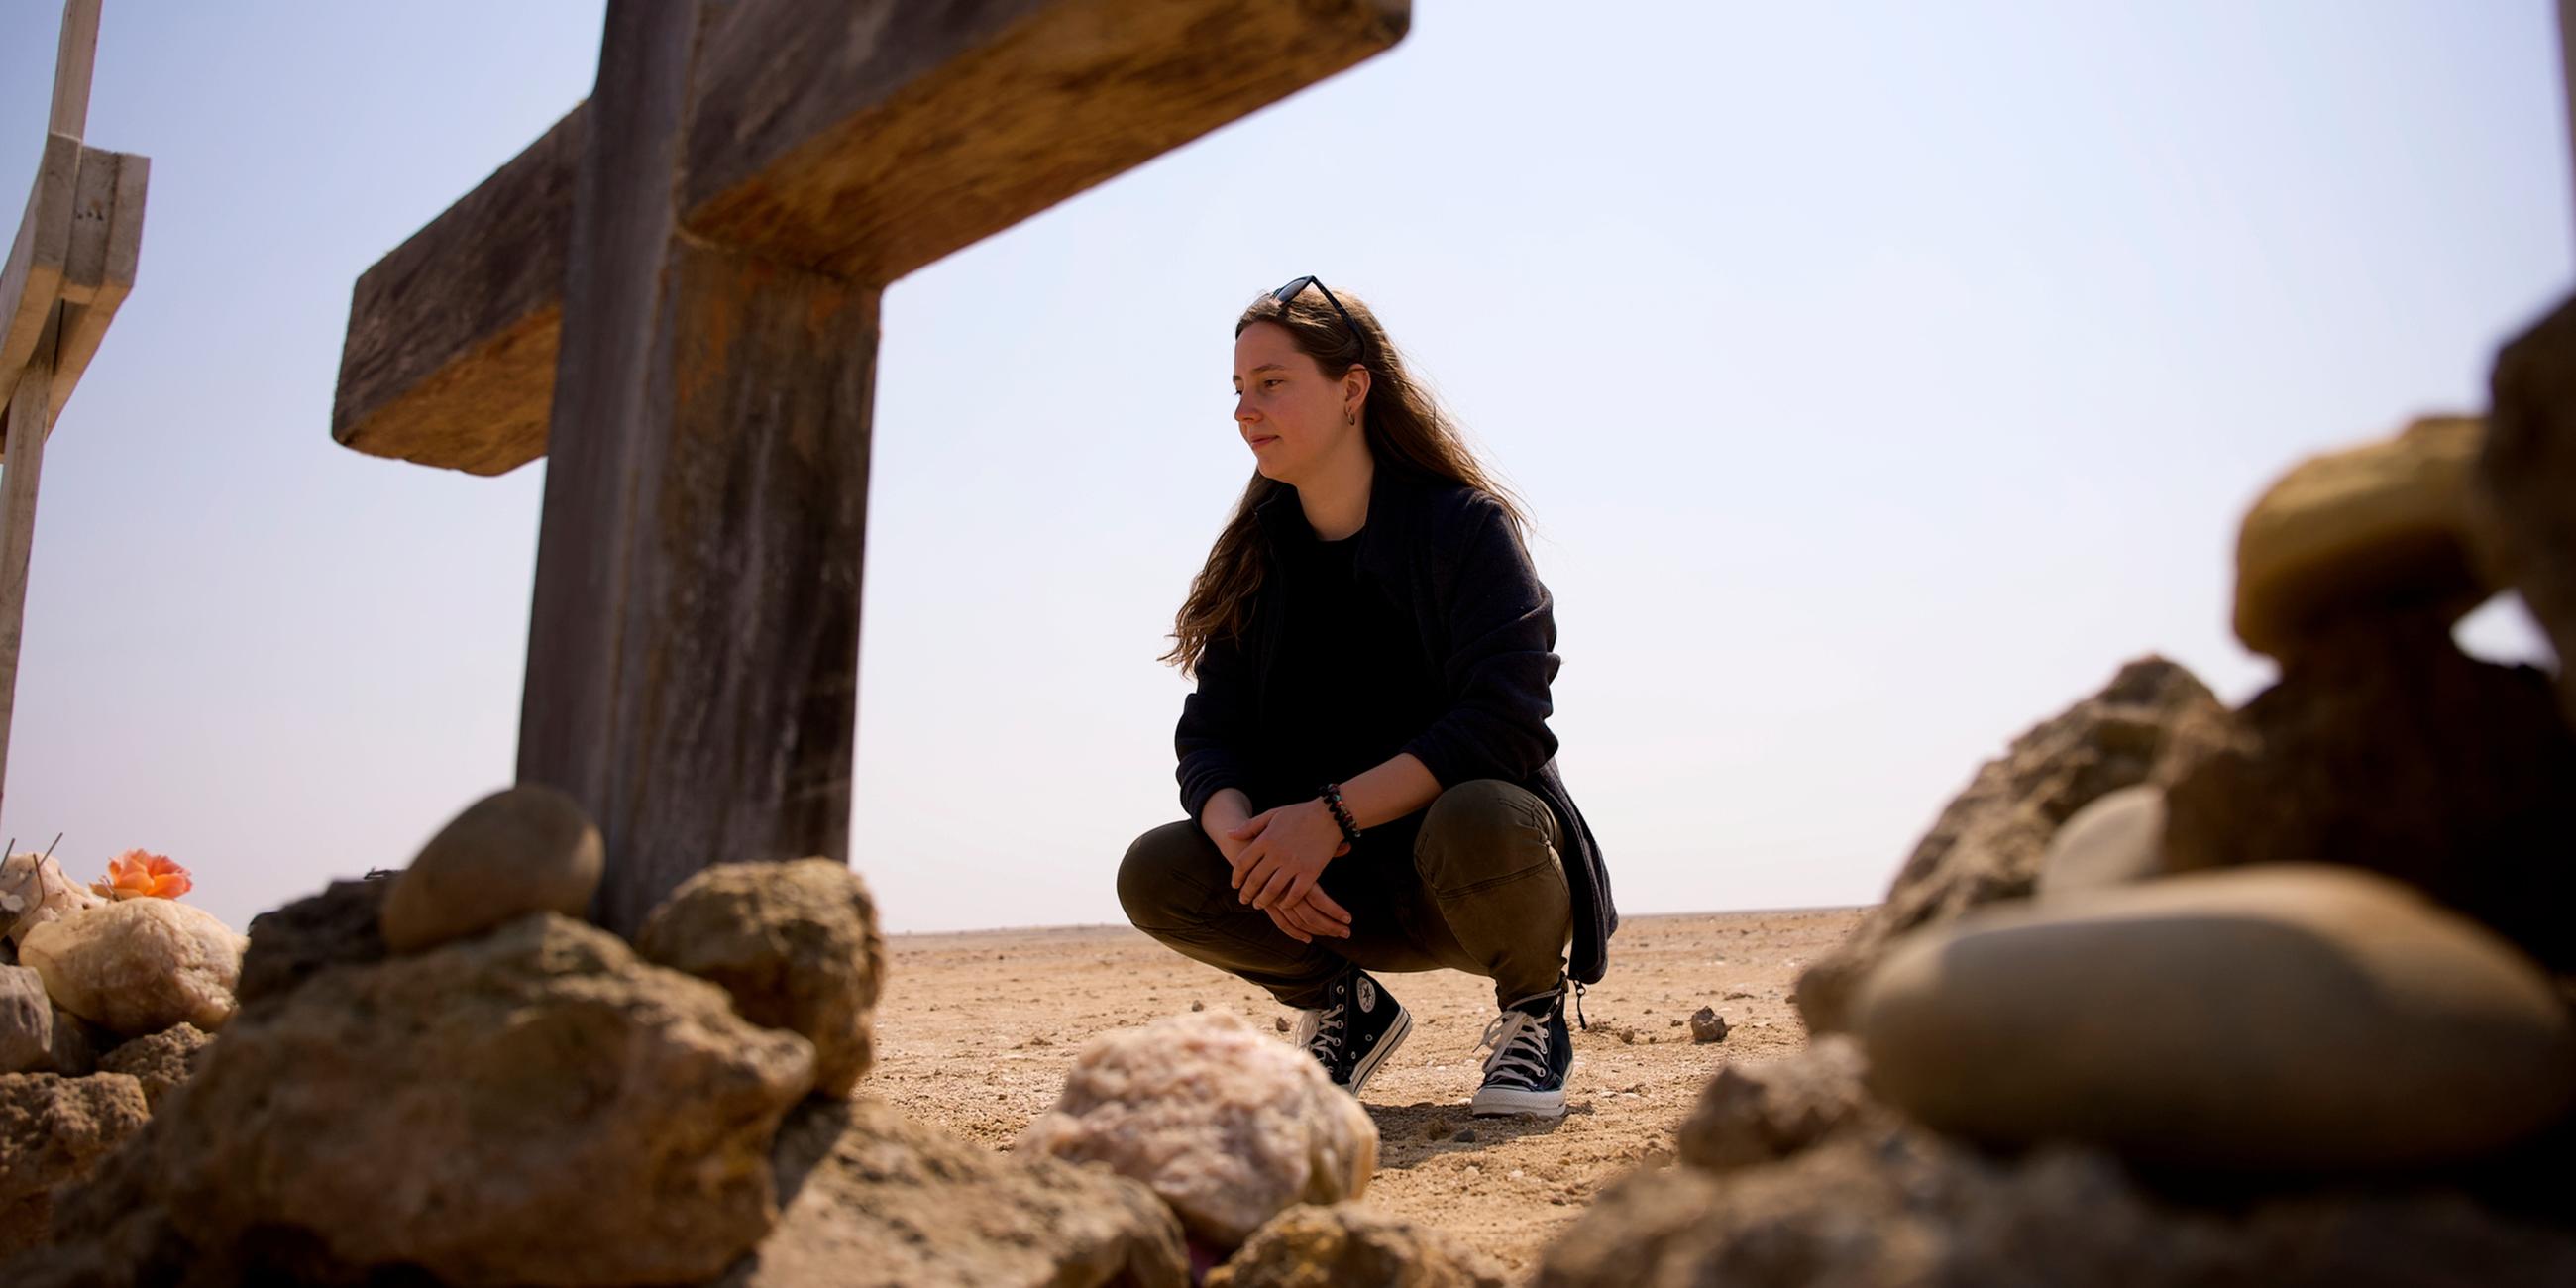 Antonia Joschkos hockt vor einem Kreuz in der Namibischen Wüste und schaut dieses an. Ein weiteres Kreuz steht mittig im Vordergrund, am rechten Bildrand ist ein weiteres Kreuz im Anschnitt zu sehen.